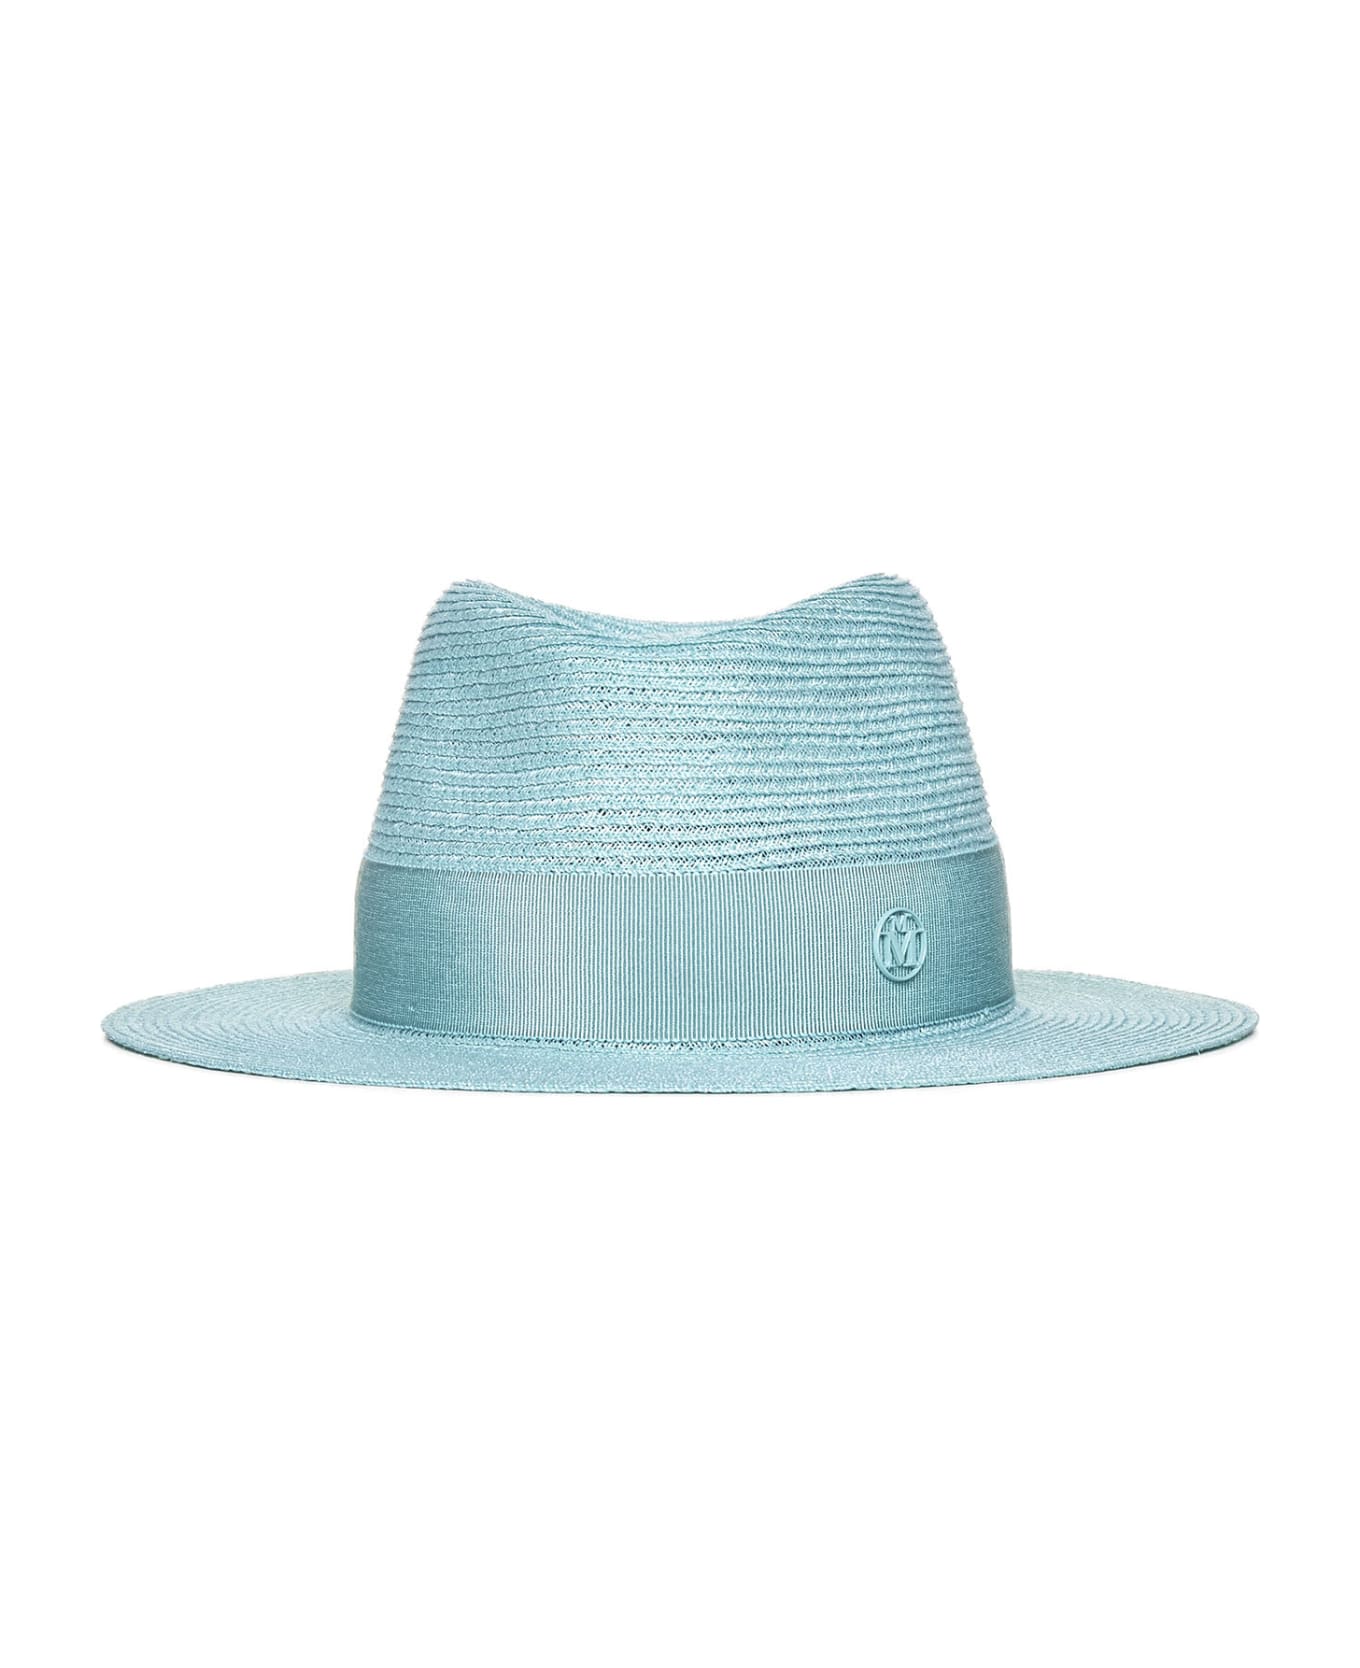 Maison Michel Hat - Aqua blue 帽子